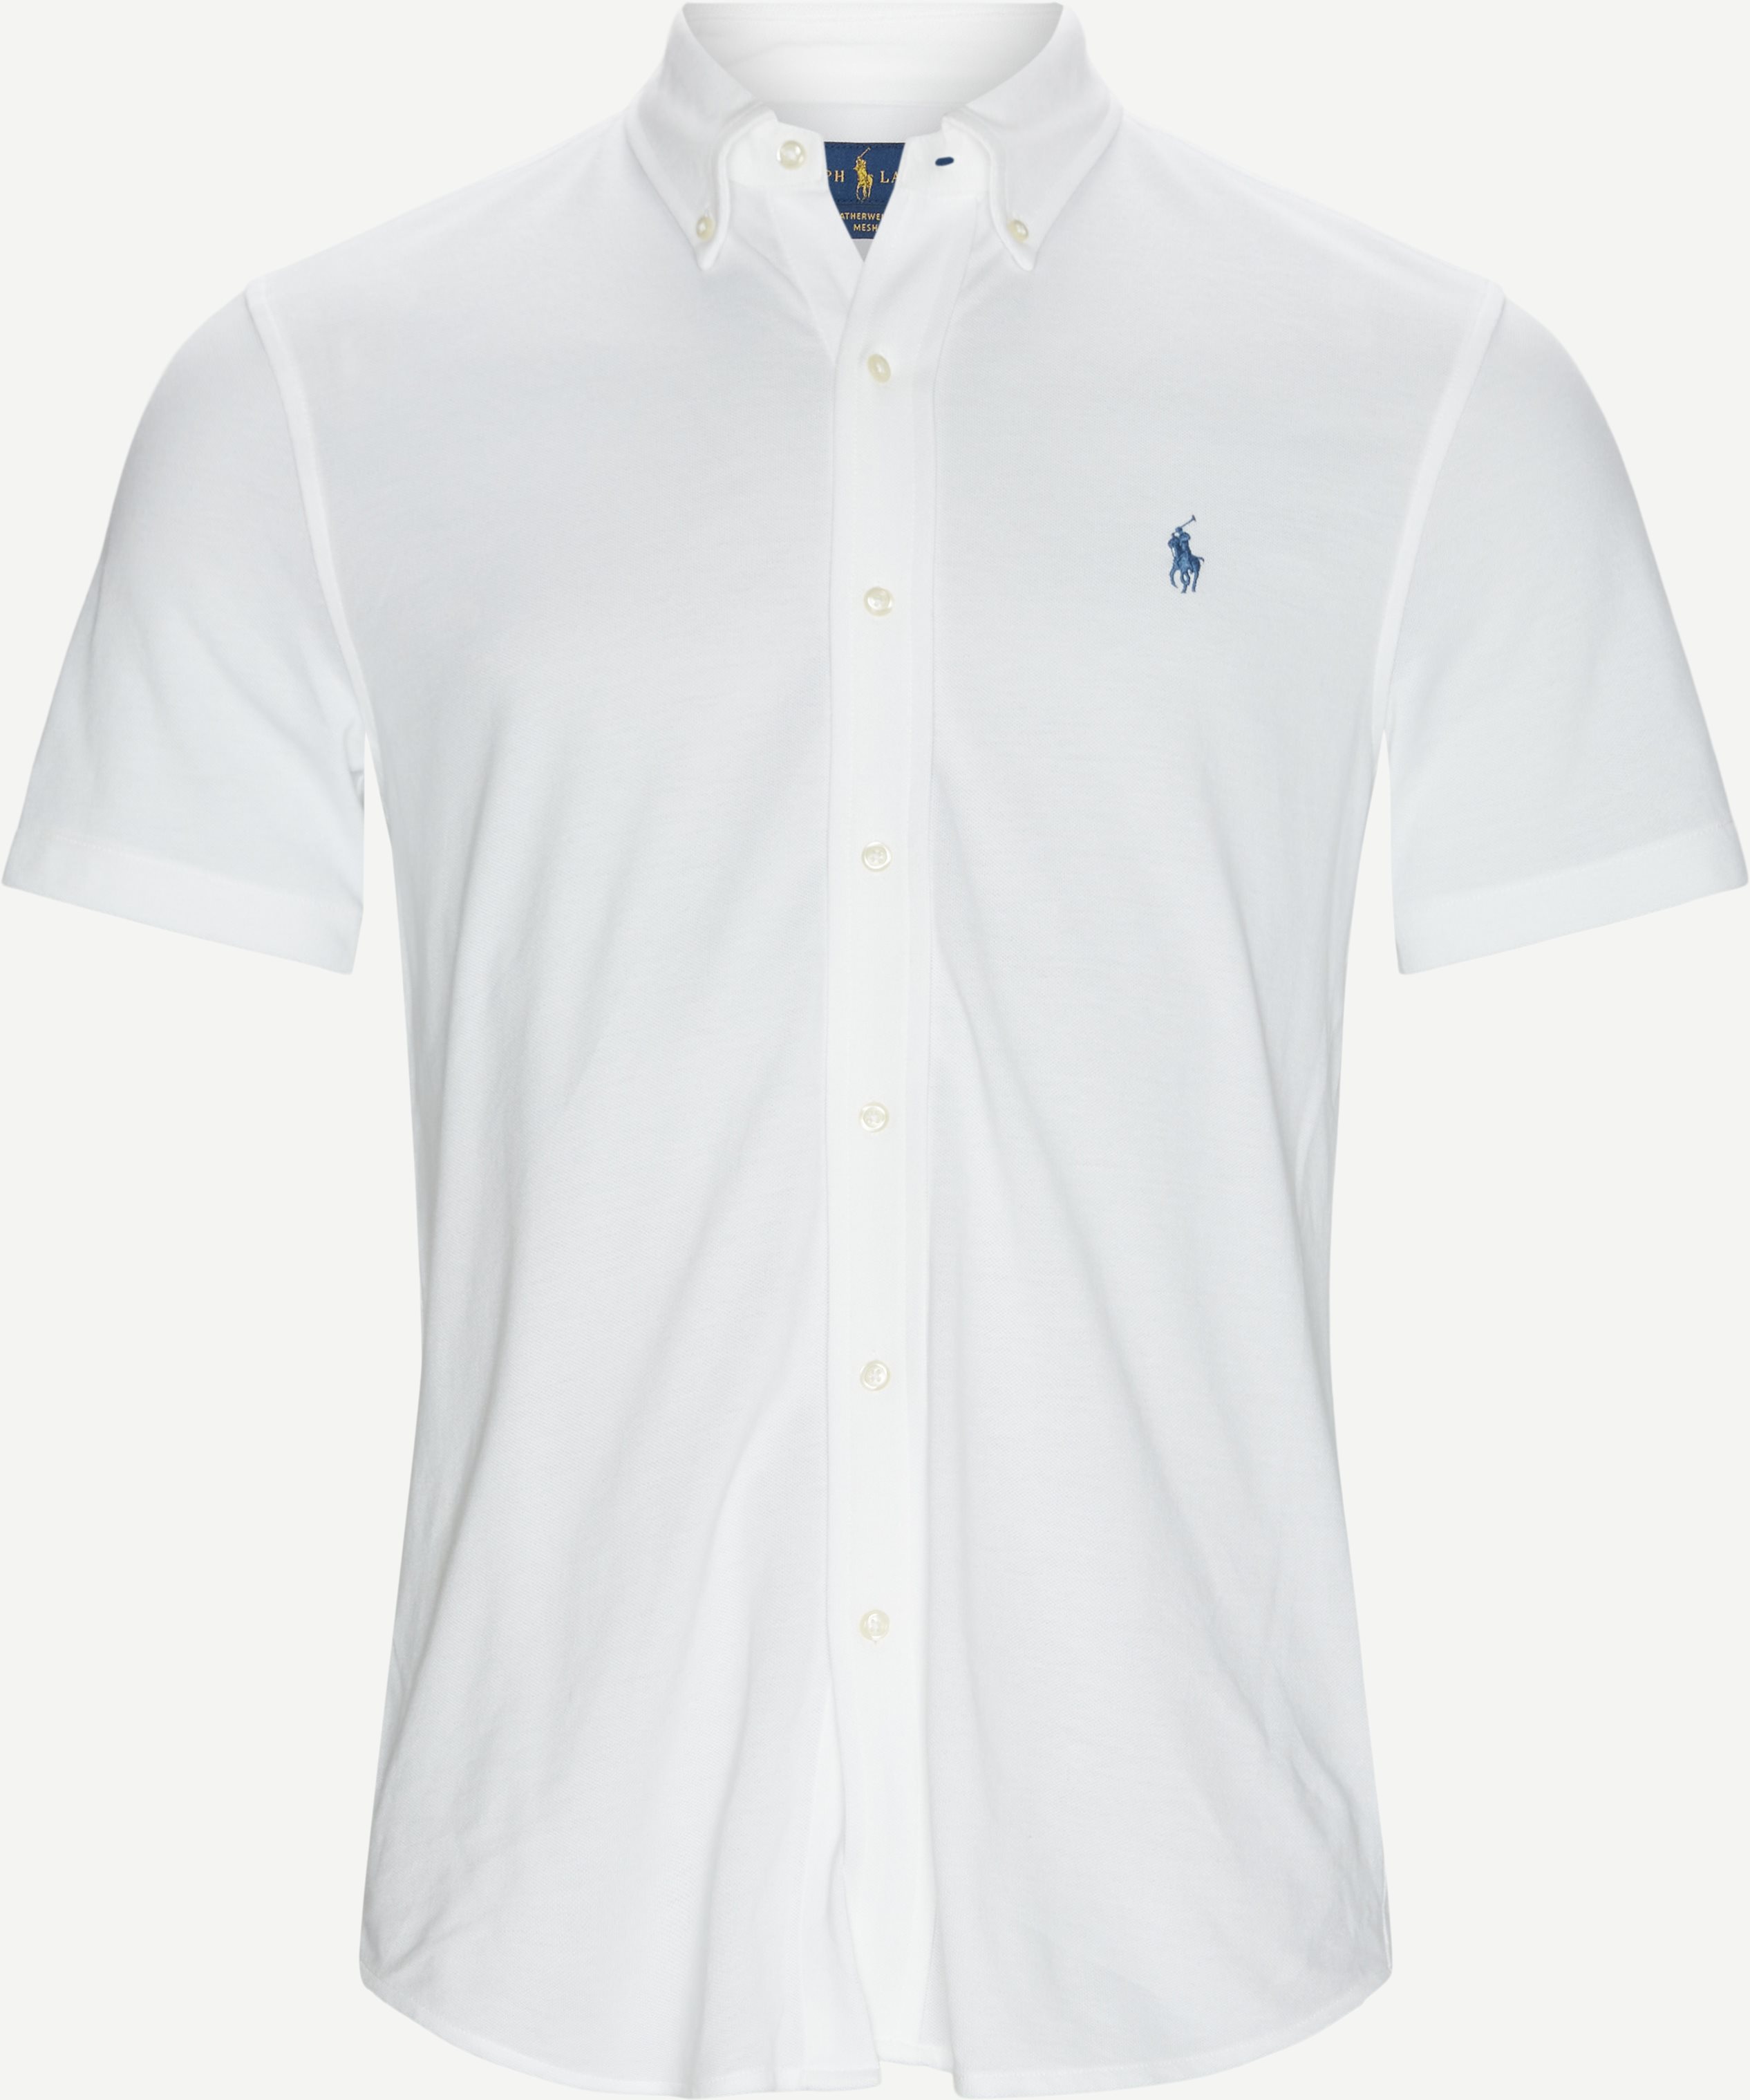 Pique-Kurzarmhemd - Kurzärmlige Hemden - Regular fit - Weiß